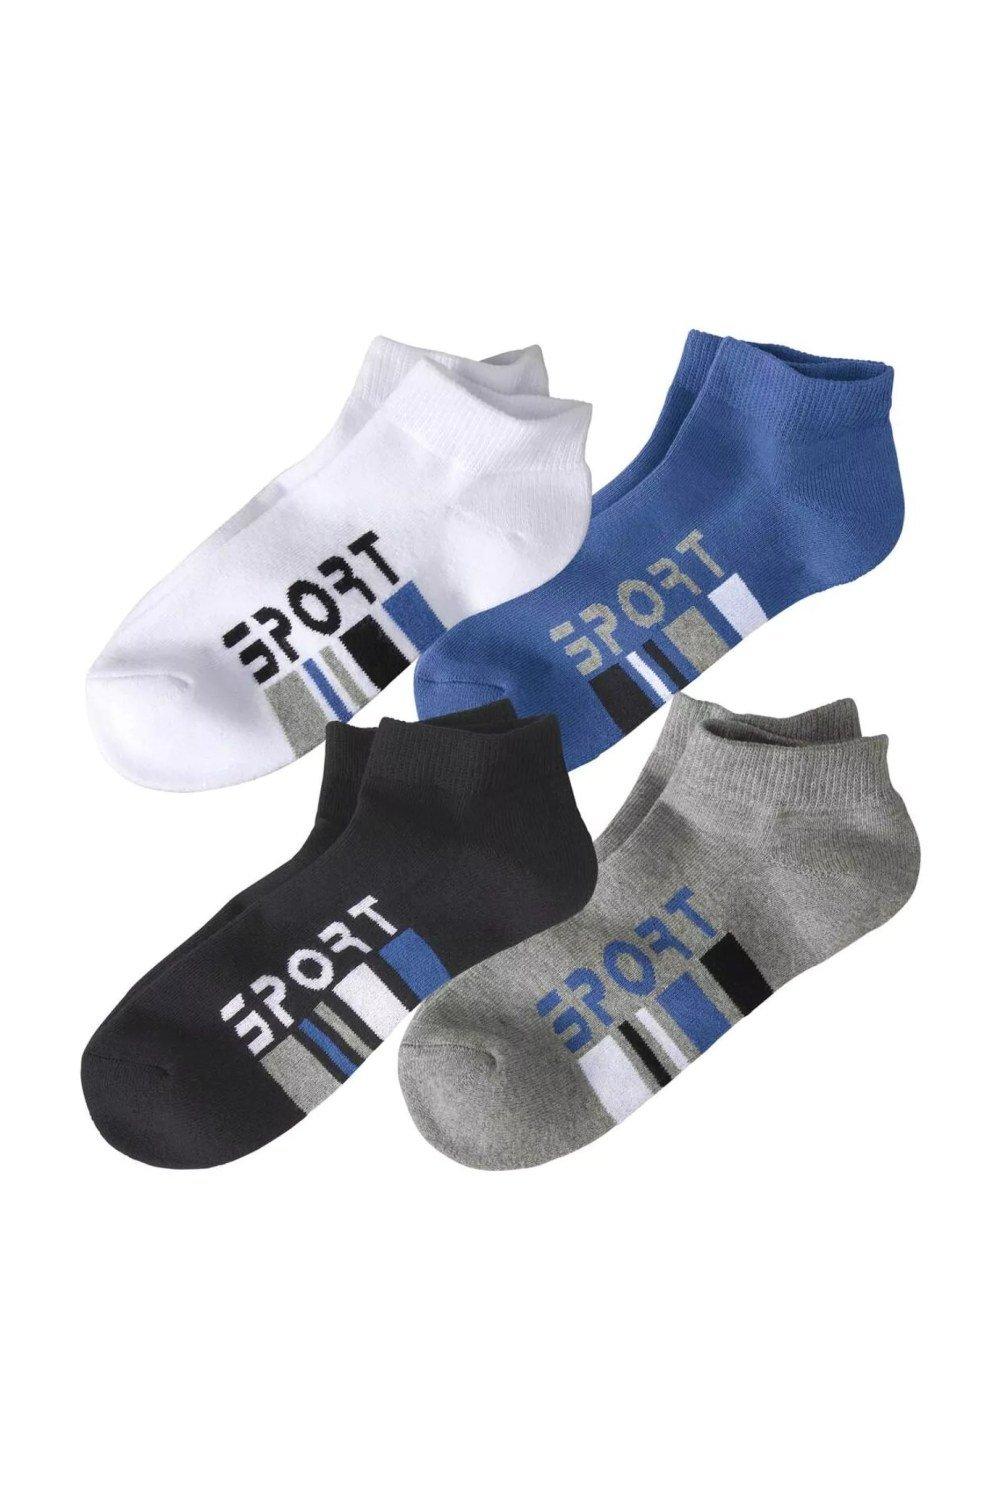 Training Ankle Socks (Pack of 4)